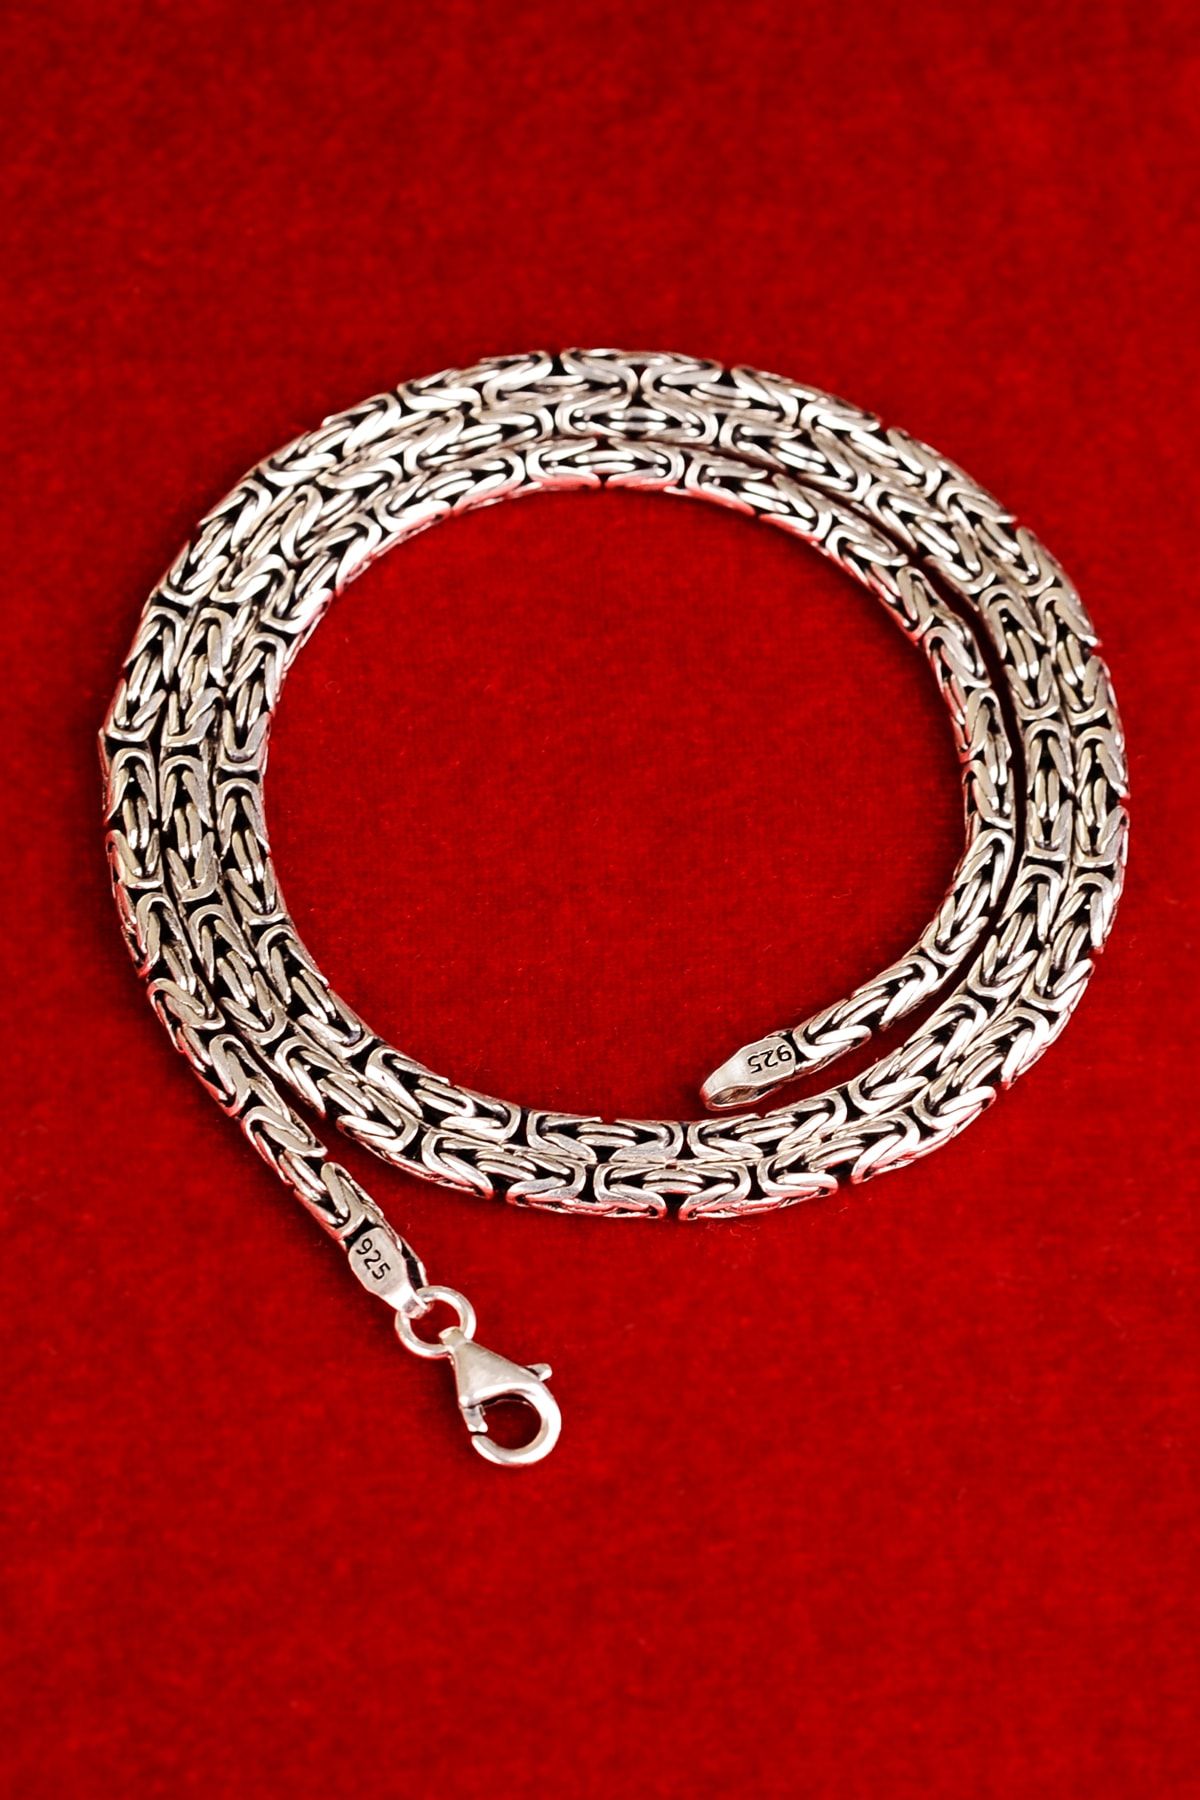 ENCİLİ SİLVER 925 Ayar Gümüş Kral Zincir Erkek Kolye Yuvarlak Model 2 Mm